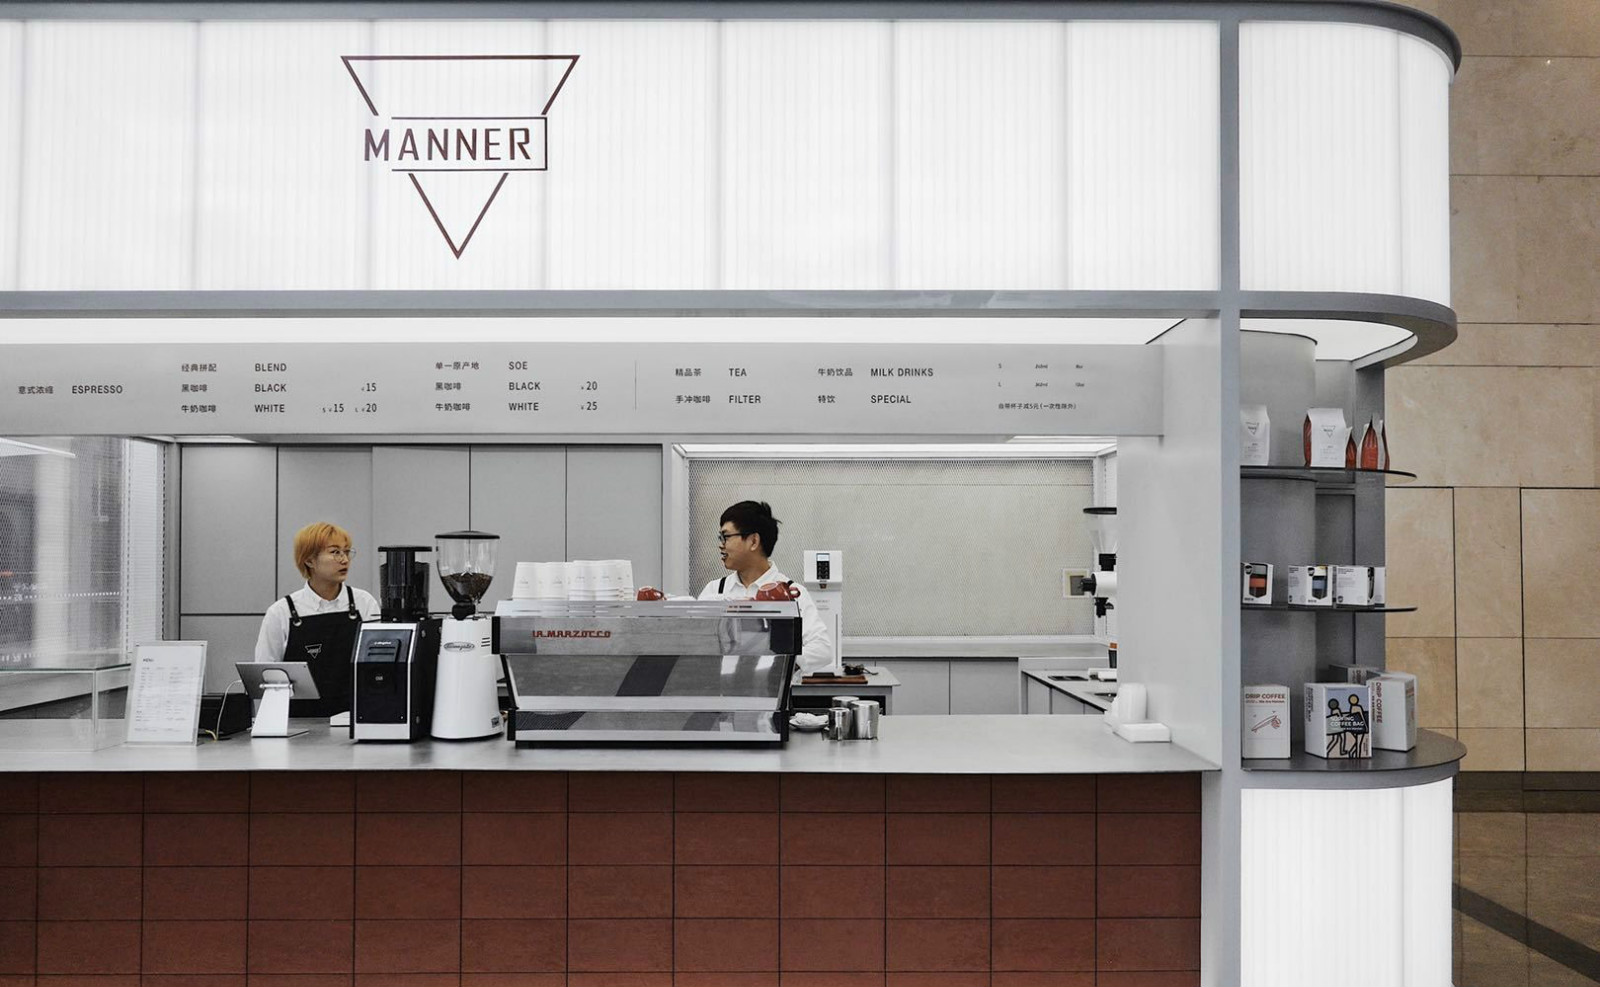 四方天地创造国内咖啡商业格局 MANNER咖啡西南首店青睐成都